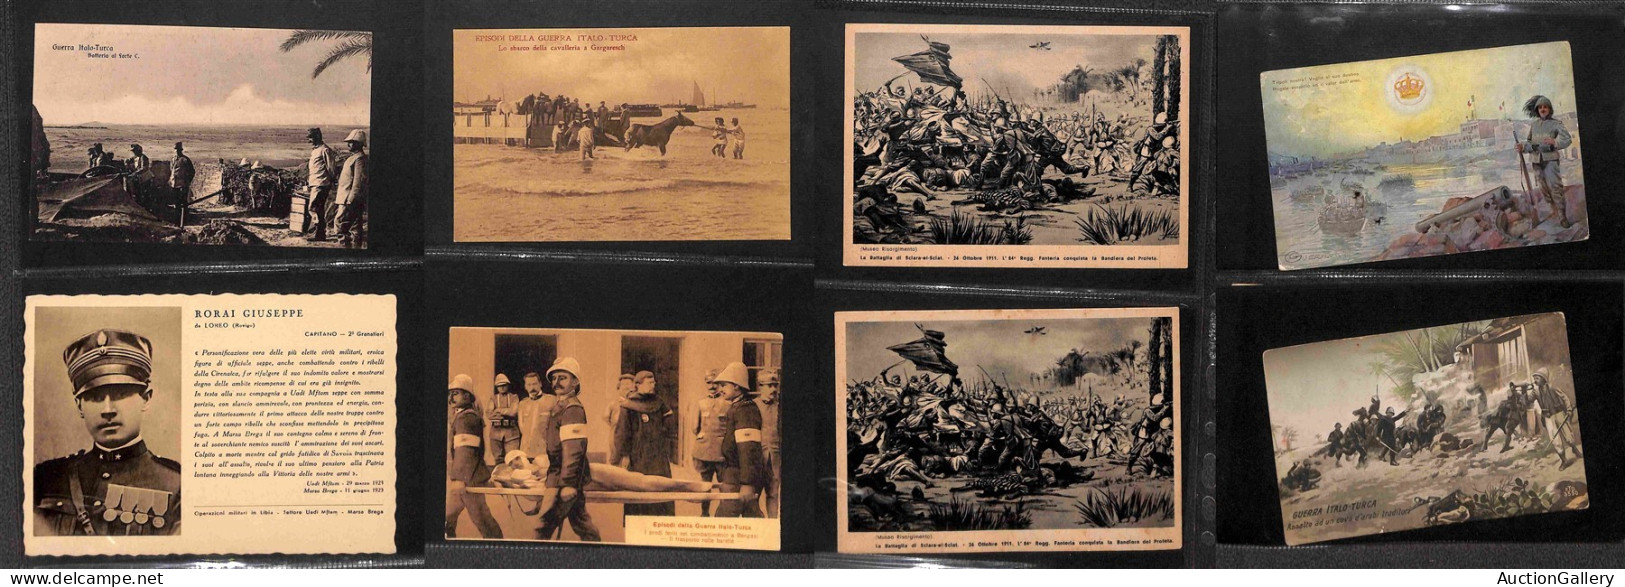 Lotti e Collezioni - Area Italiana  - CARTOLINE - Guerra Italo Turca/Conquista della Libia - 68 cartoline diverse illust